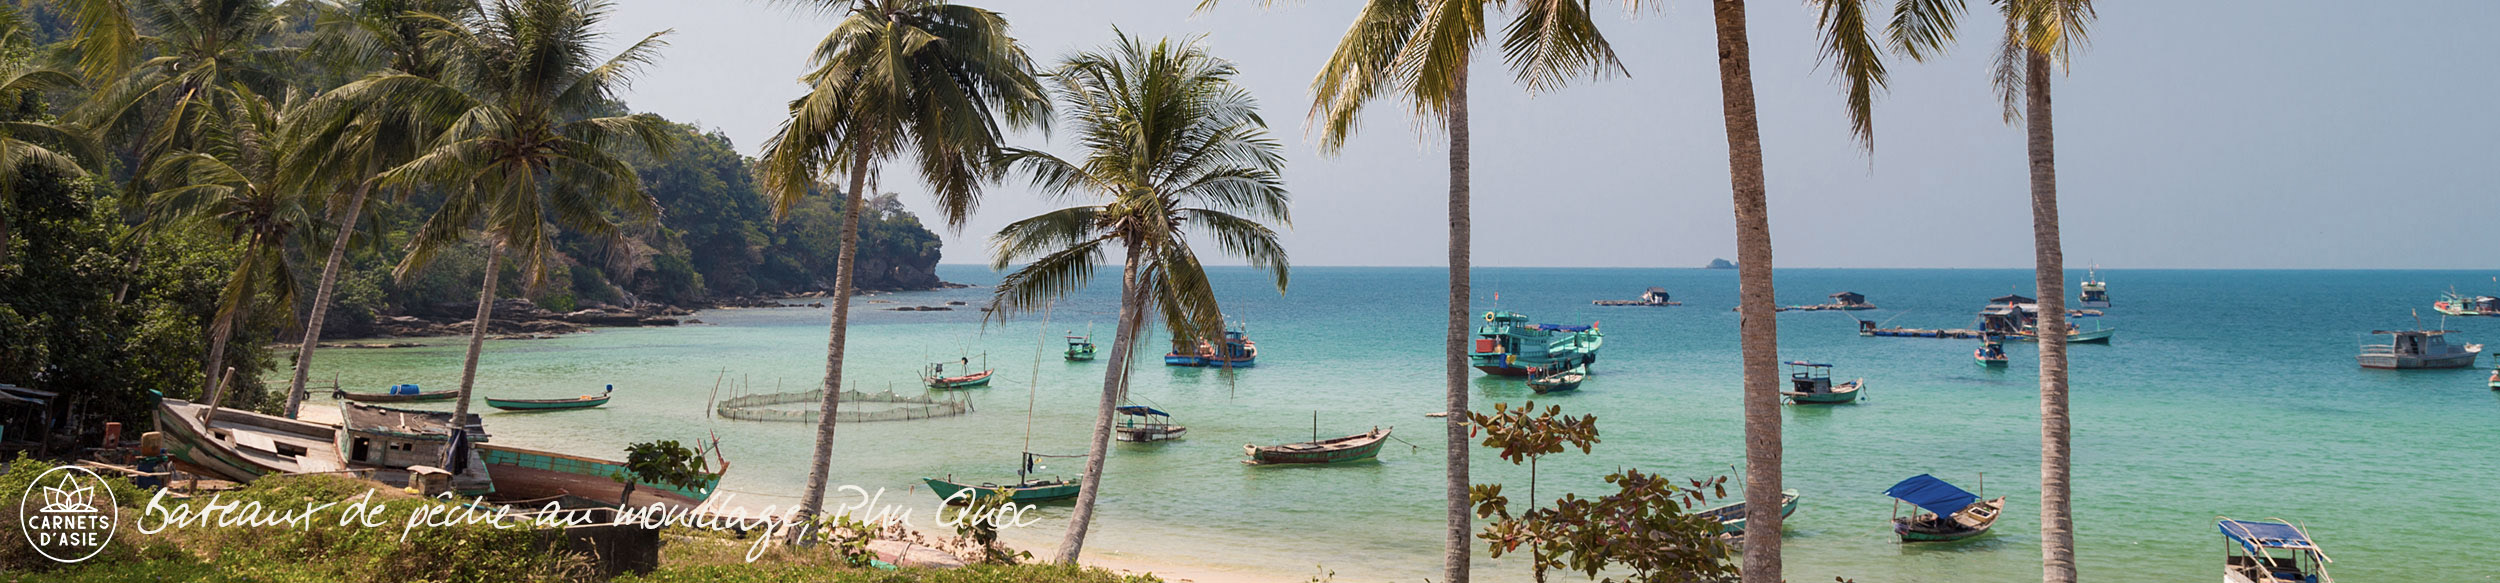 Plage et bateaux de pêcheurs sur l'île de Phu Quoc au sud Vietnam